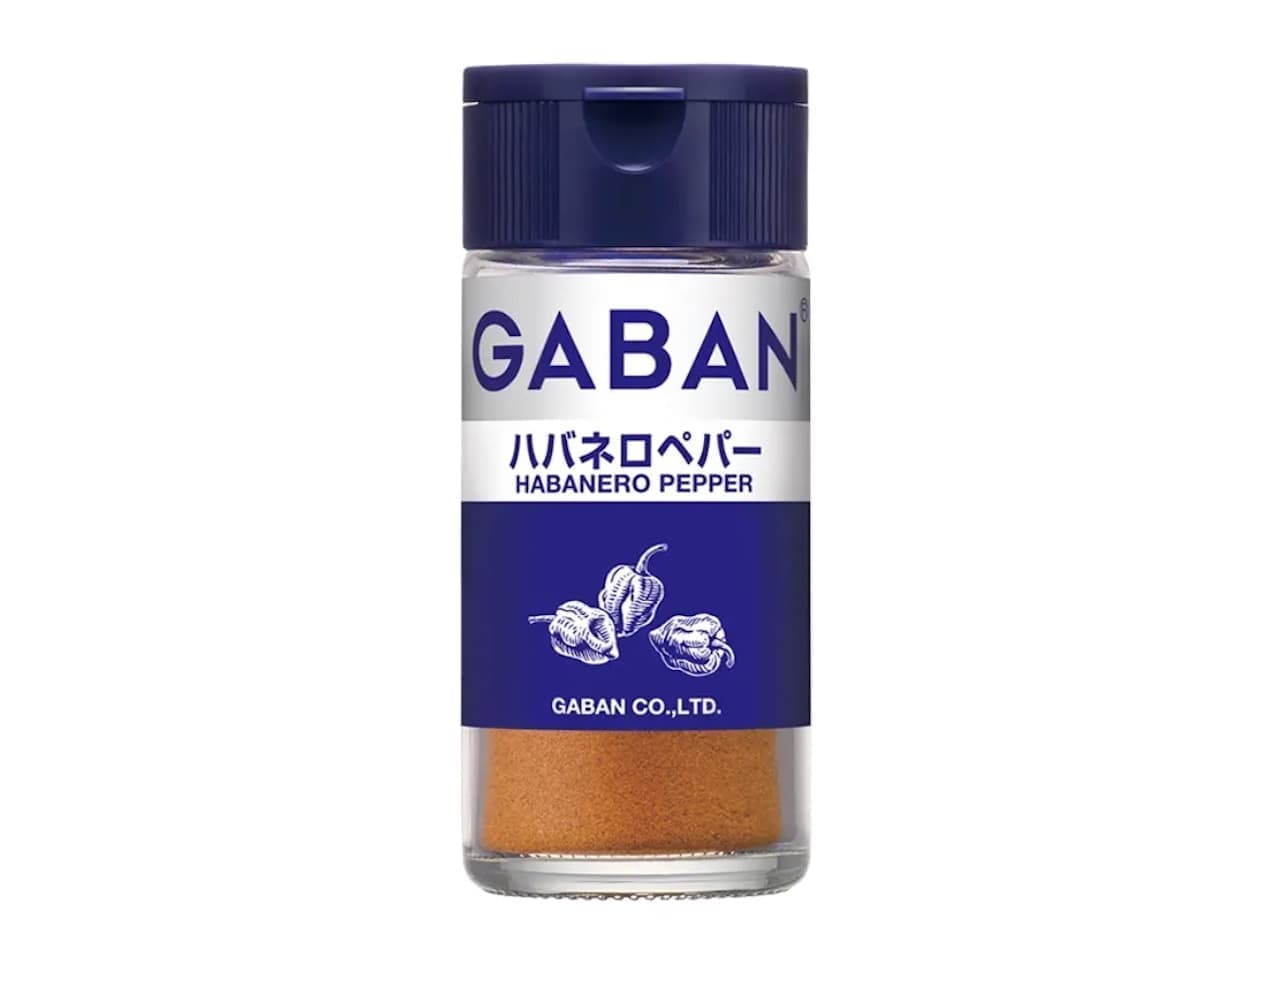 GABAN "Habanero Pepper"